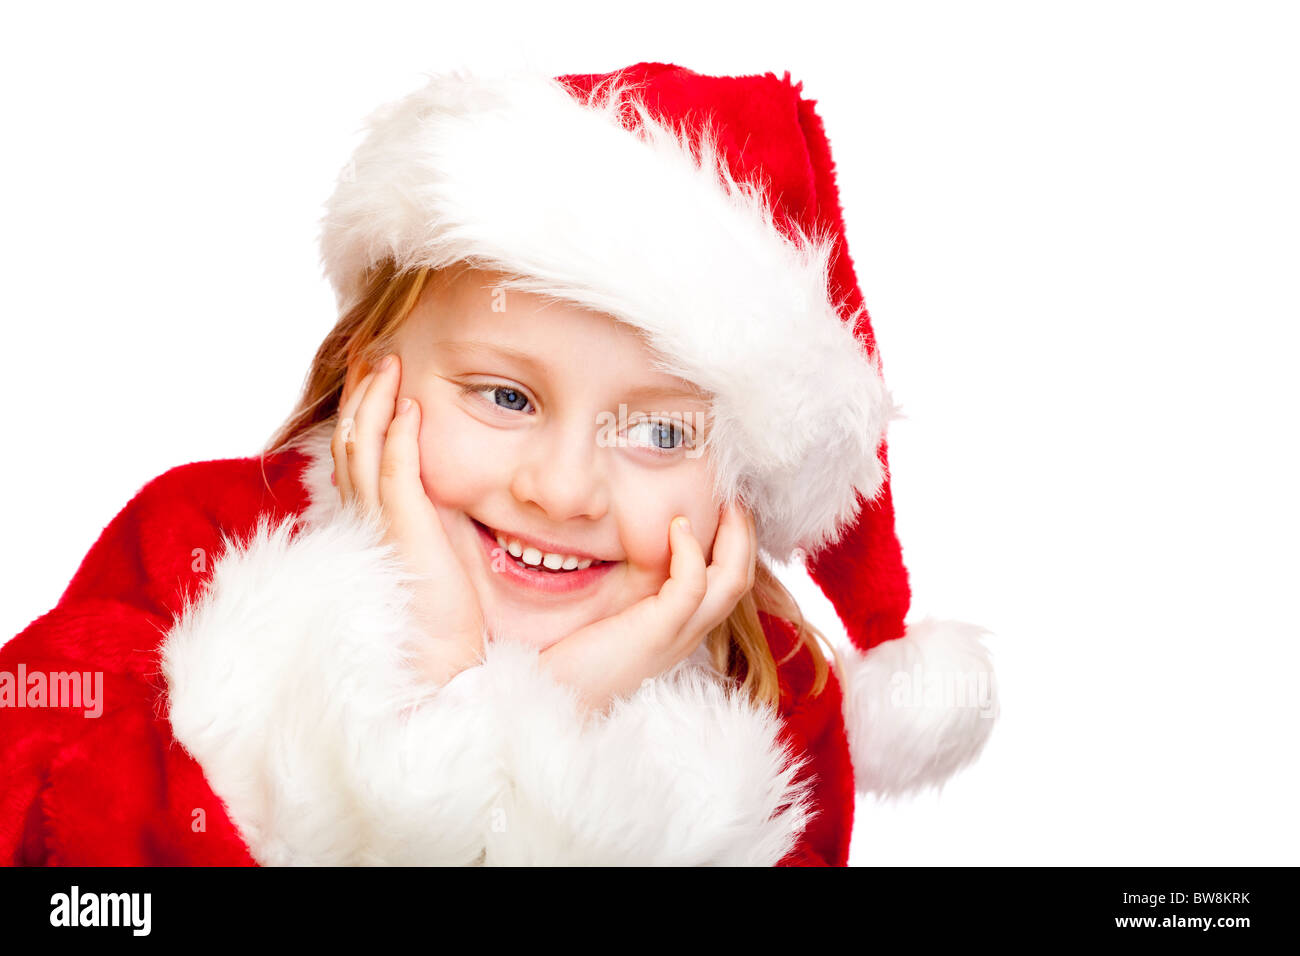 Kleines Mädchen verkleidet als Weihnachtsmann lächelt glücklich.  Isoliert auf weißem Hintergrund. Stockfoto